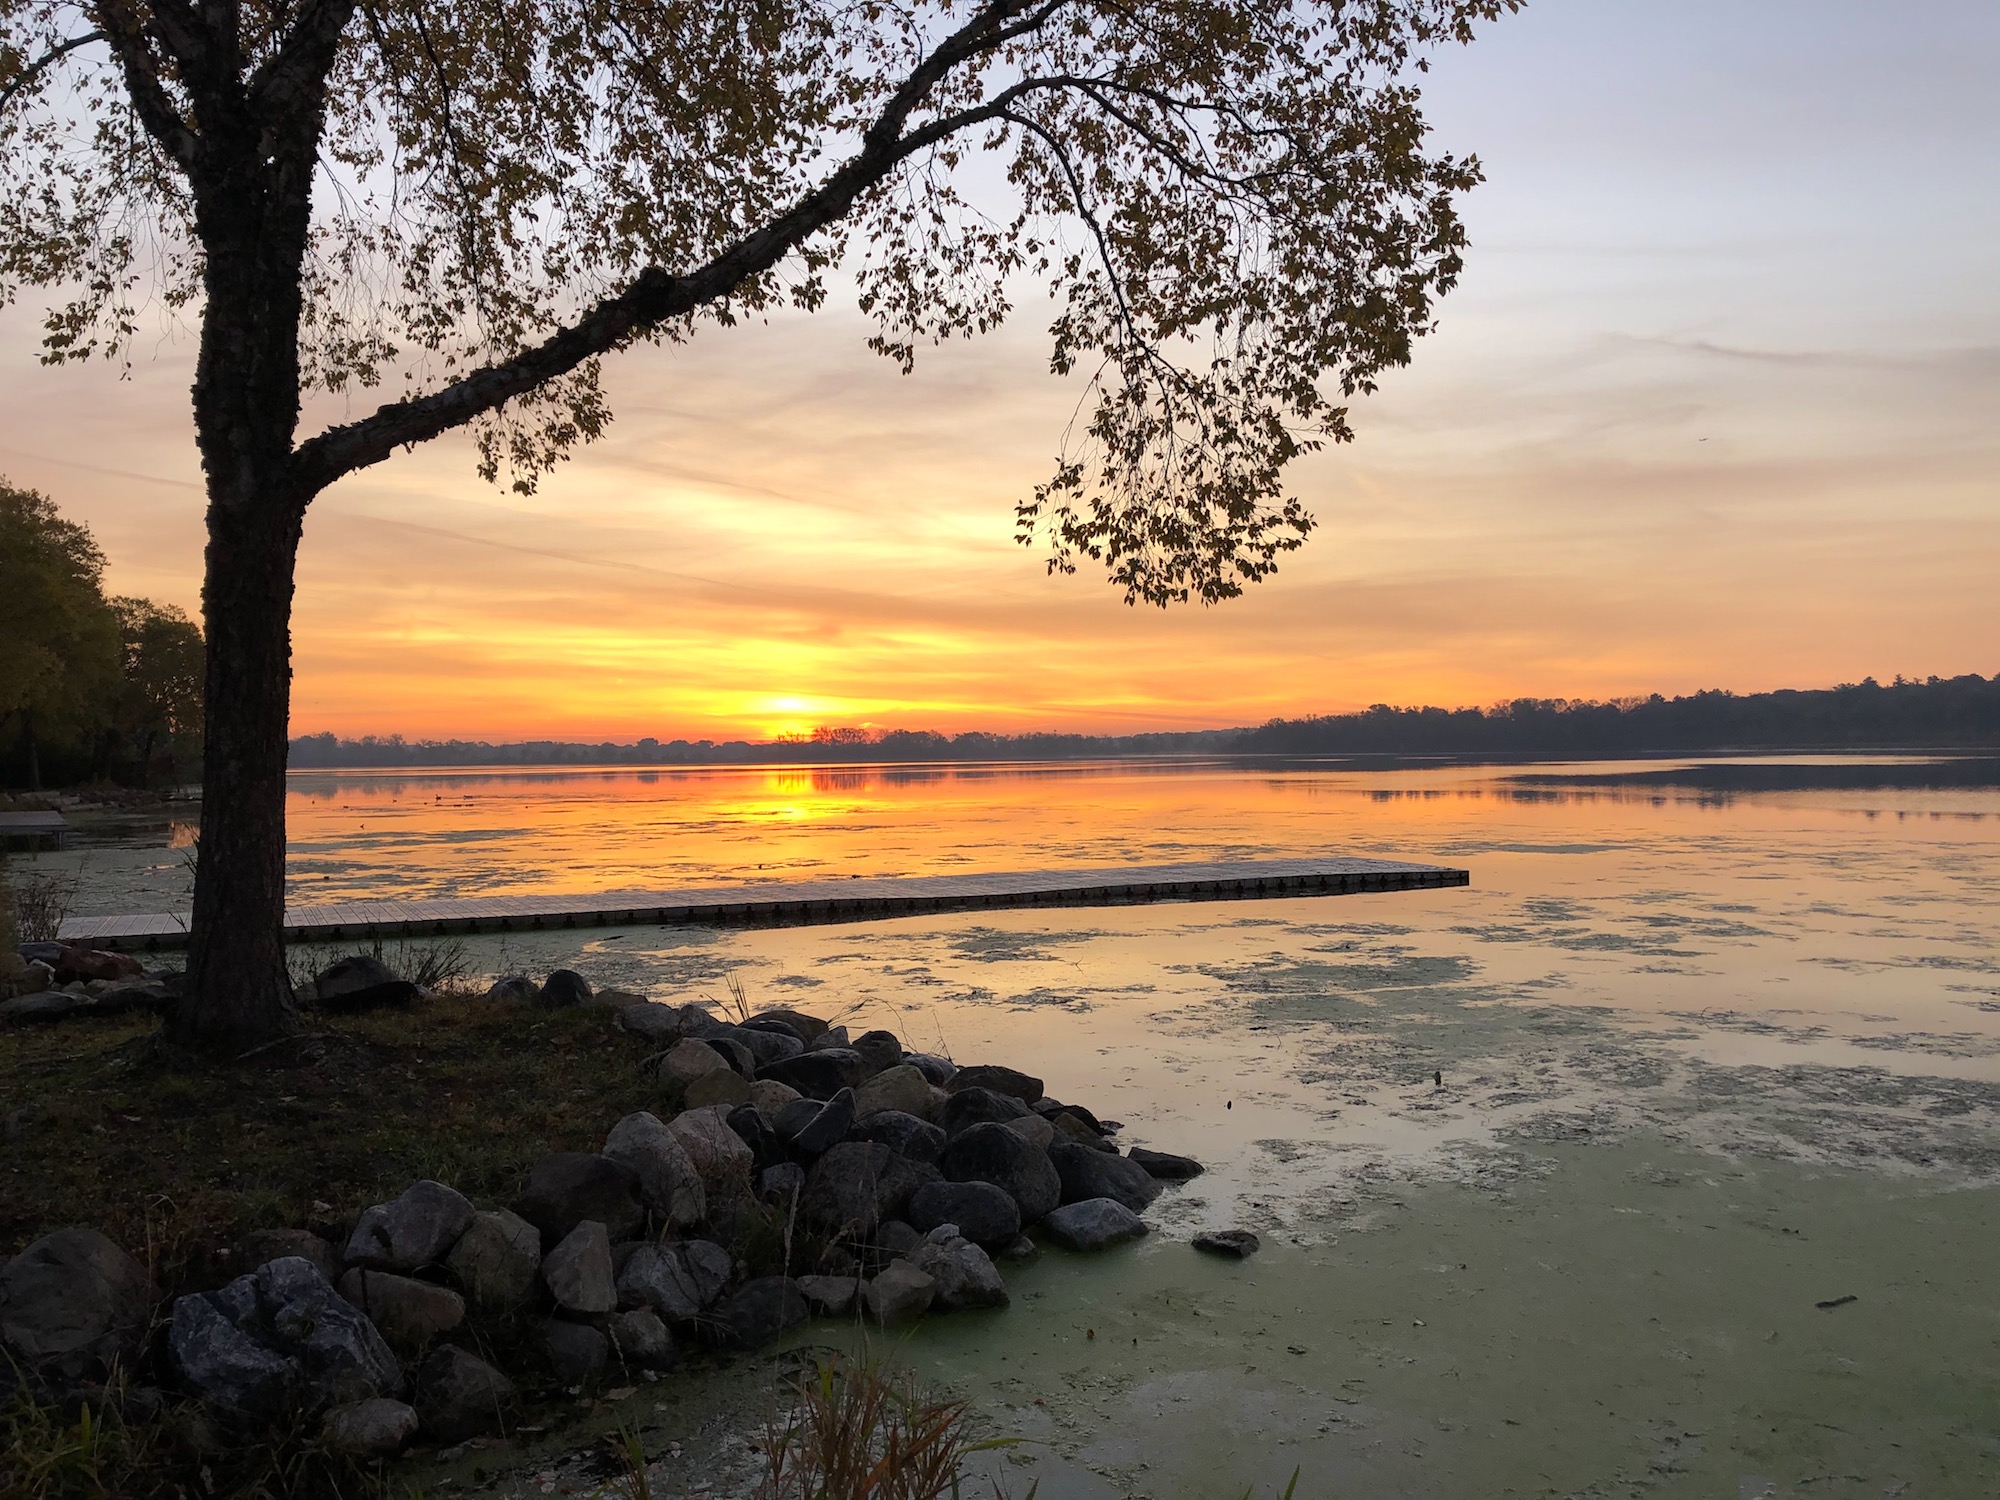 Lake Wingra on October 18, 2019.